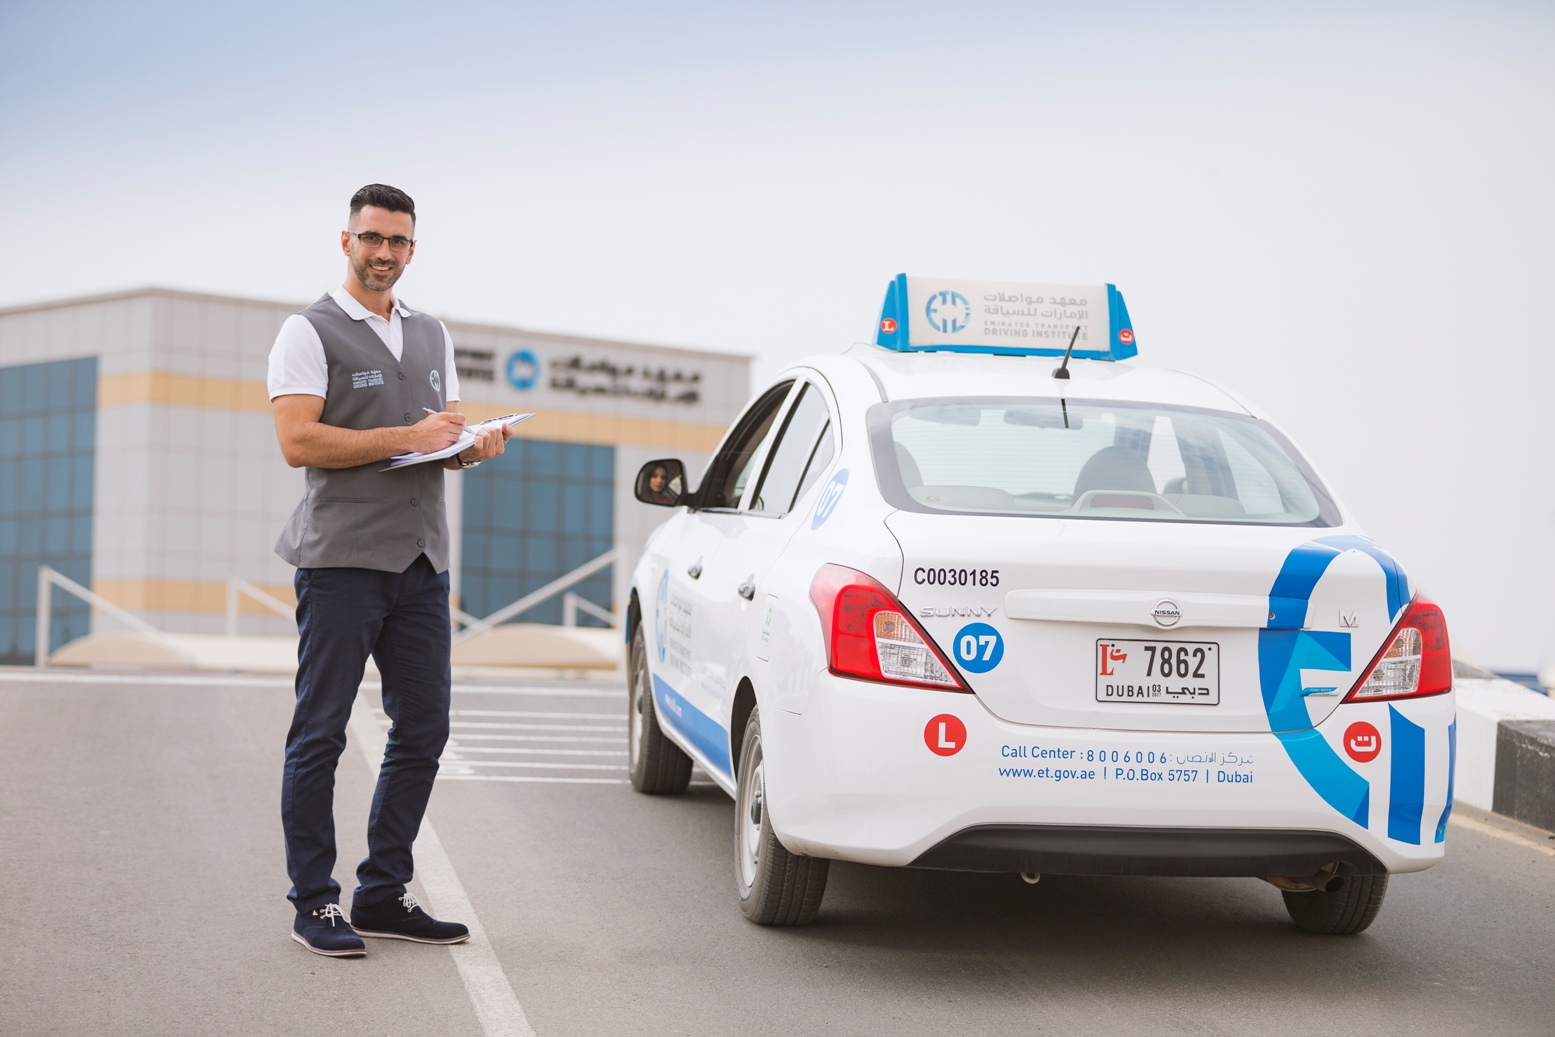 معهد مواصلات الإمارات للسياقة يطلق حزمة من العروض الترويجية والتخفيضات القياسية على أسعار خدماته